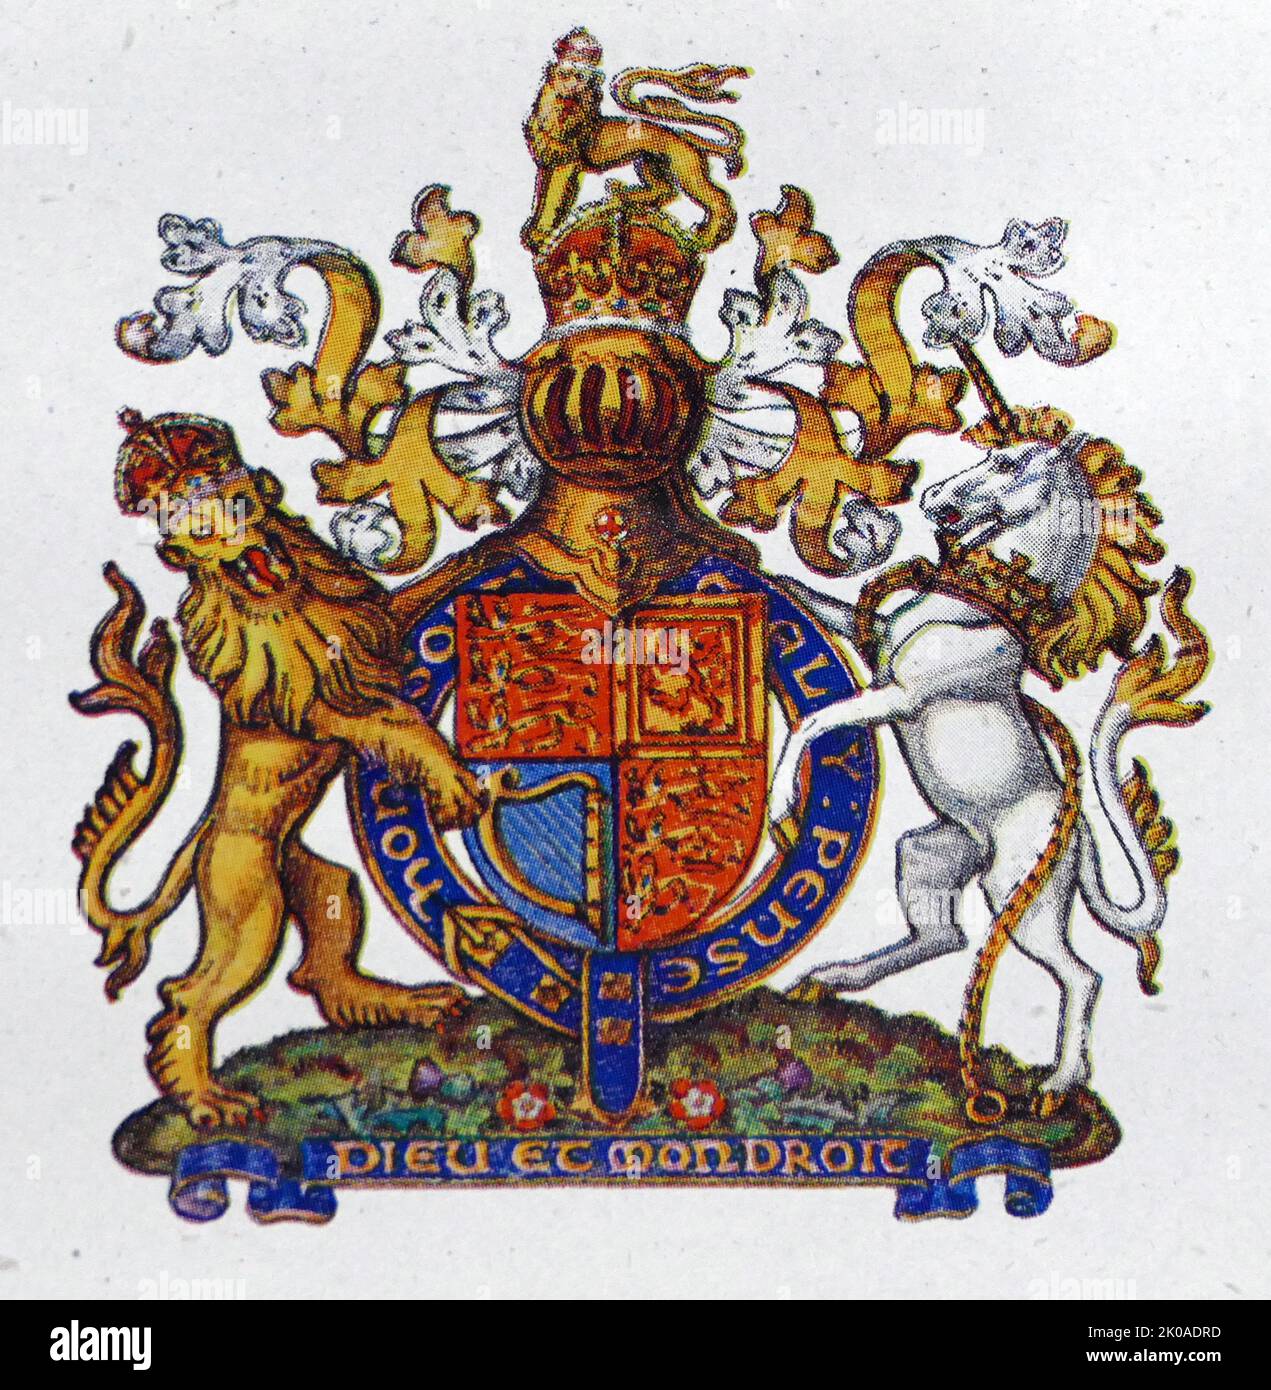 Das Motto erscheint auf einer Schriftrolle unter dem Schild auf der Version des königlichen Wappens des Vereinigten Königreichs, das außerhalb Schottlands verwendet wird Stockfoto